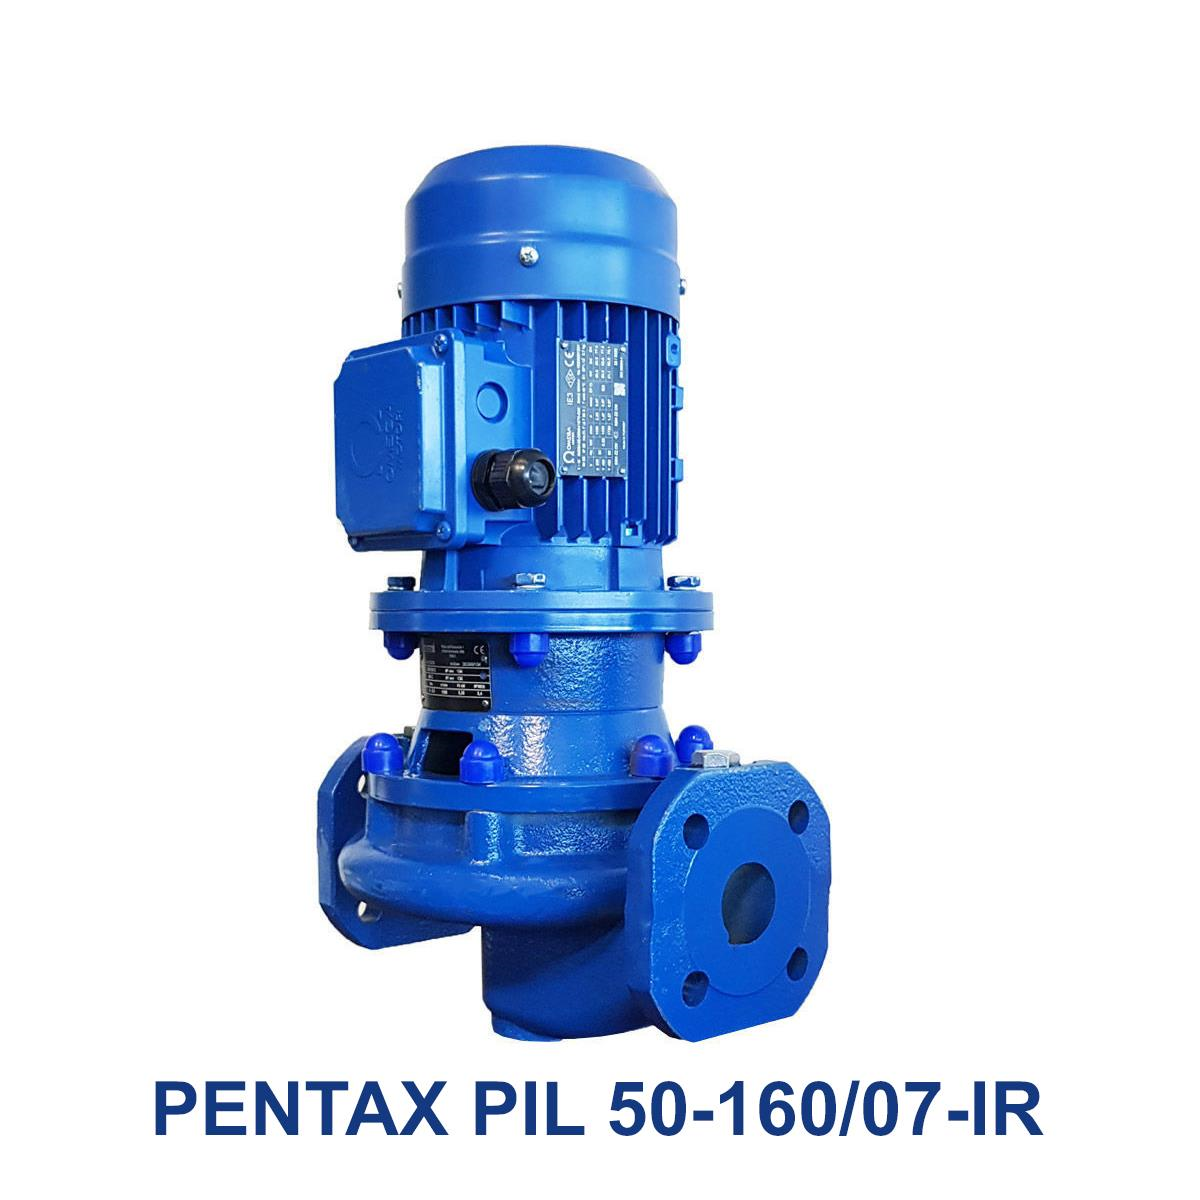 PENTAX-PIL-50-160-07-IR